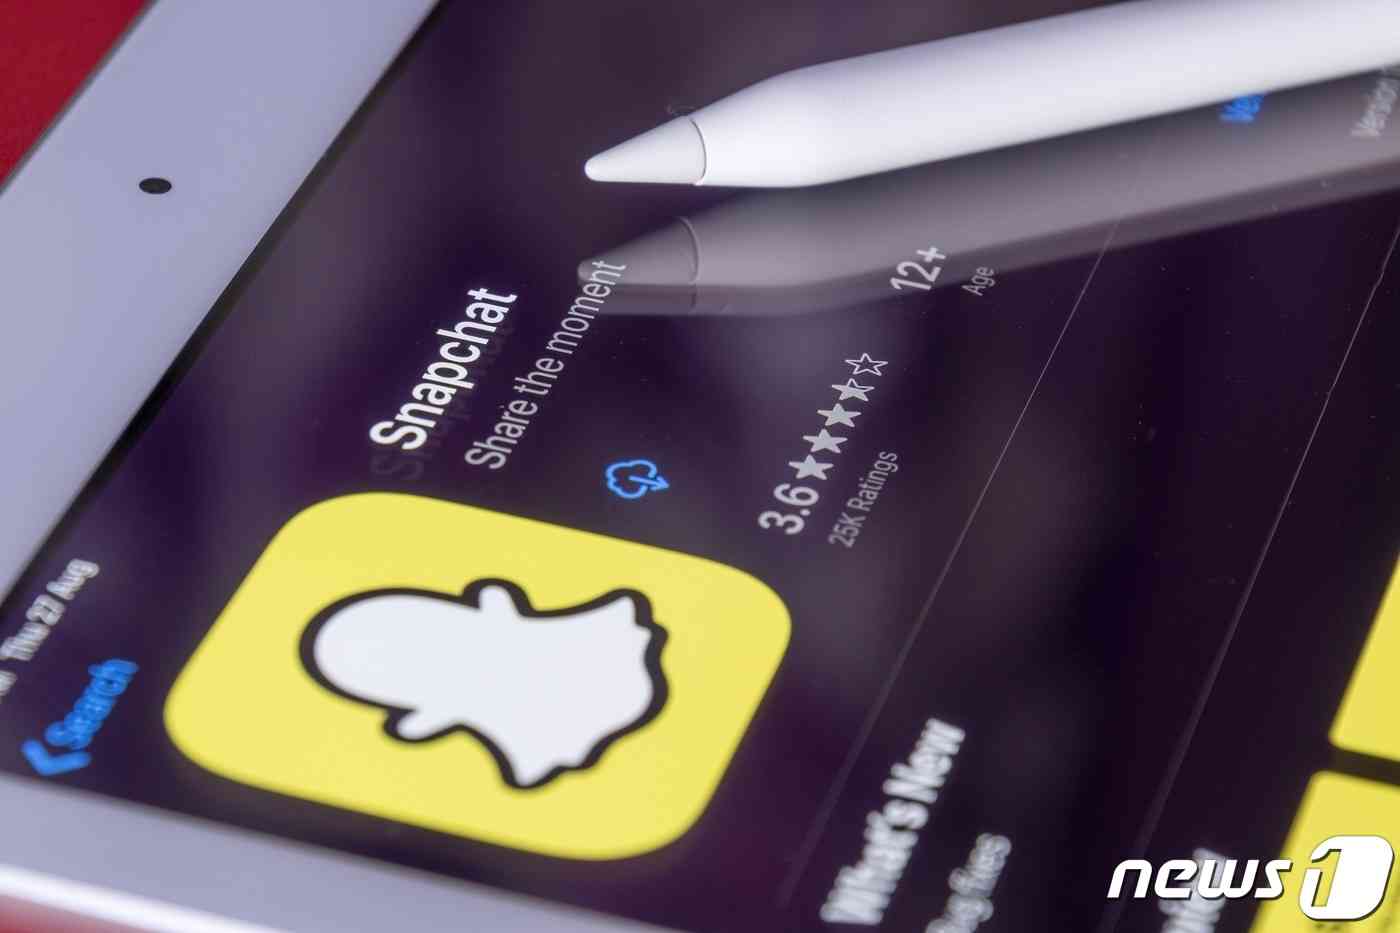  페이스북에 이어서 또 다른 소셜미디어 스냅챗(Snapchat)도 일리노이주 생체정보 보호법 위반으로 소송에 휘말렸다. (픽사베이)